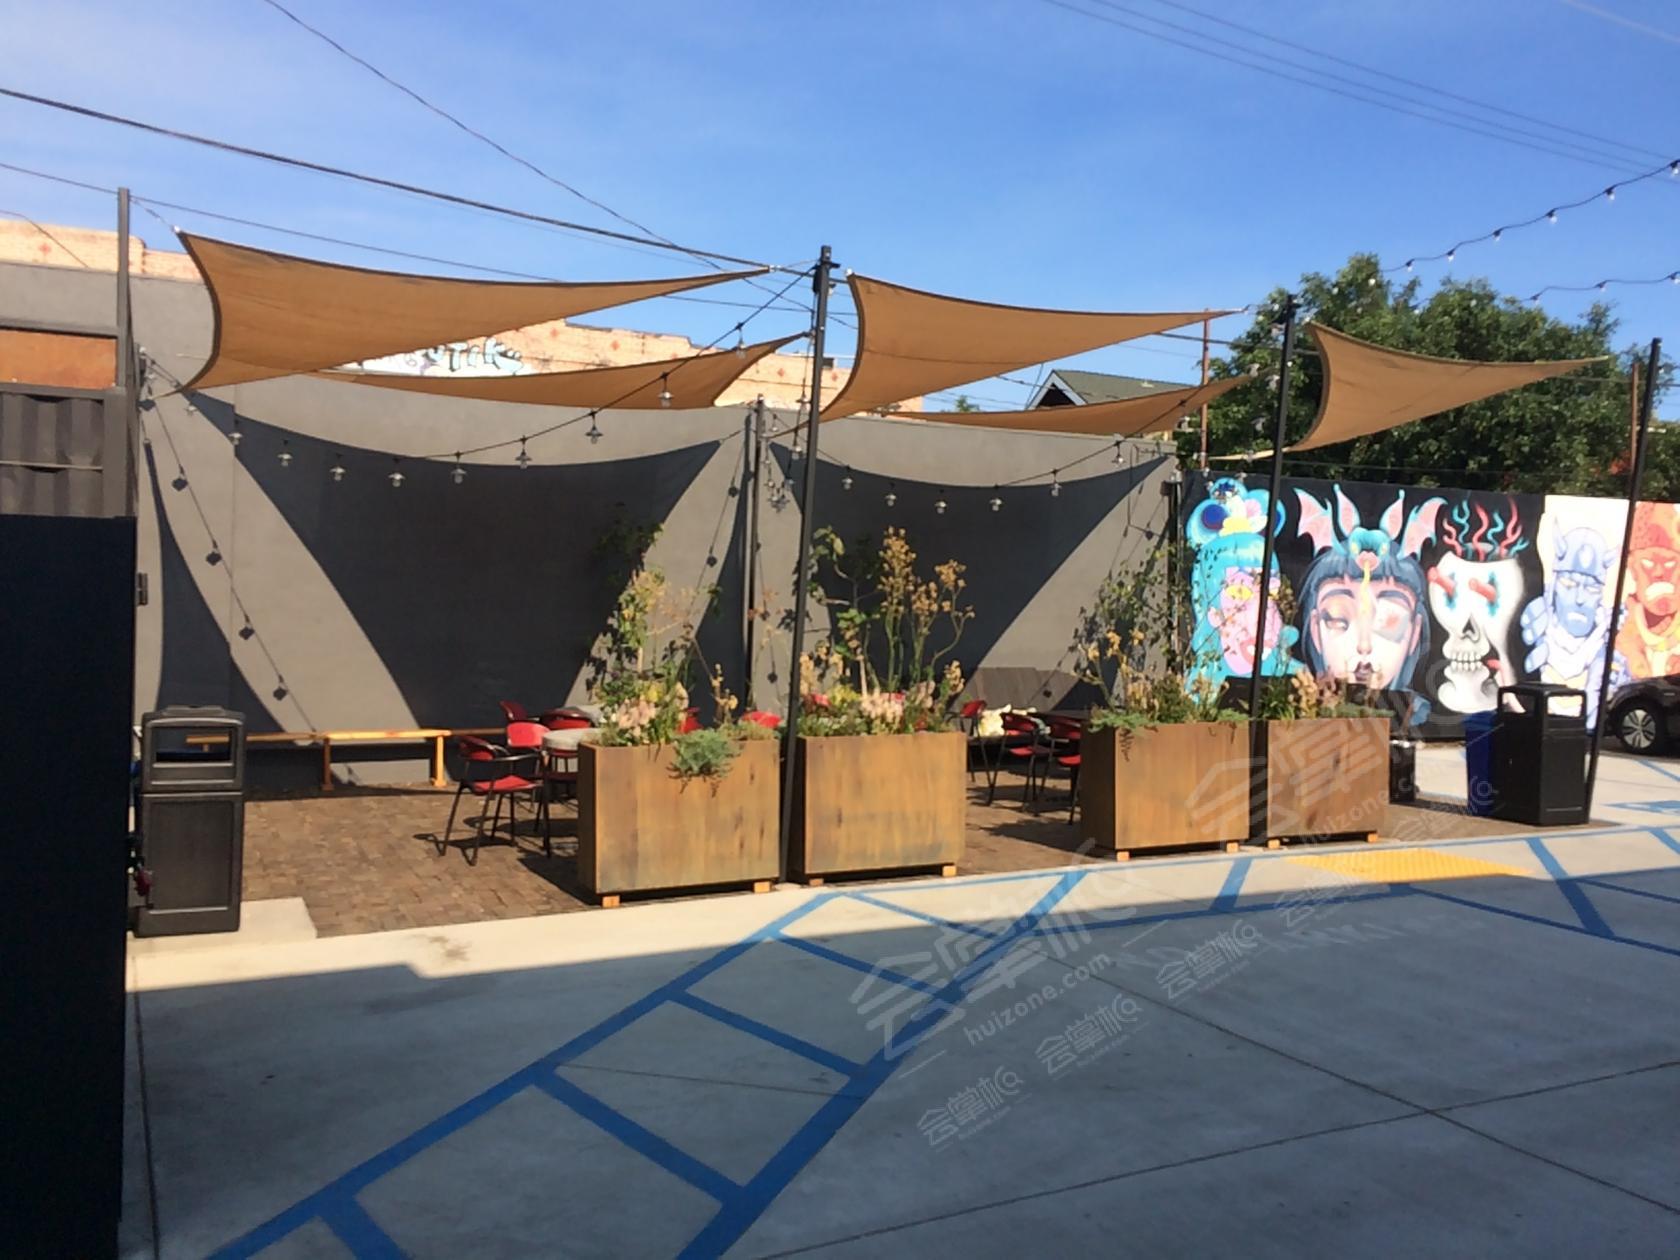 Outdoor Art Yard / Parking Lot